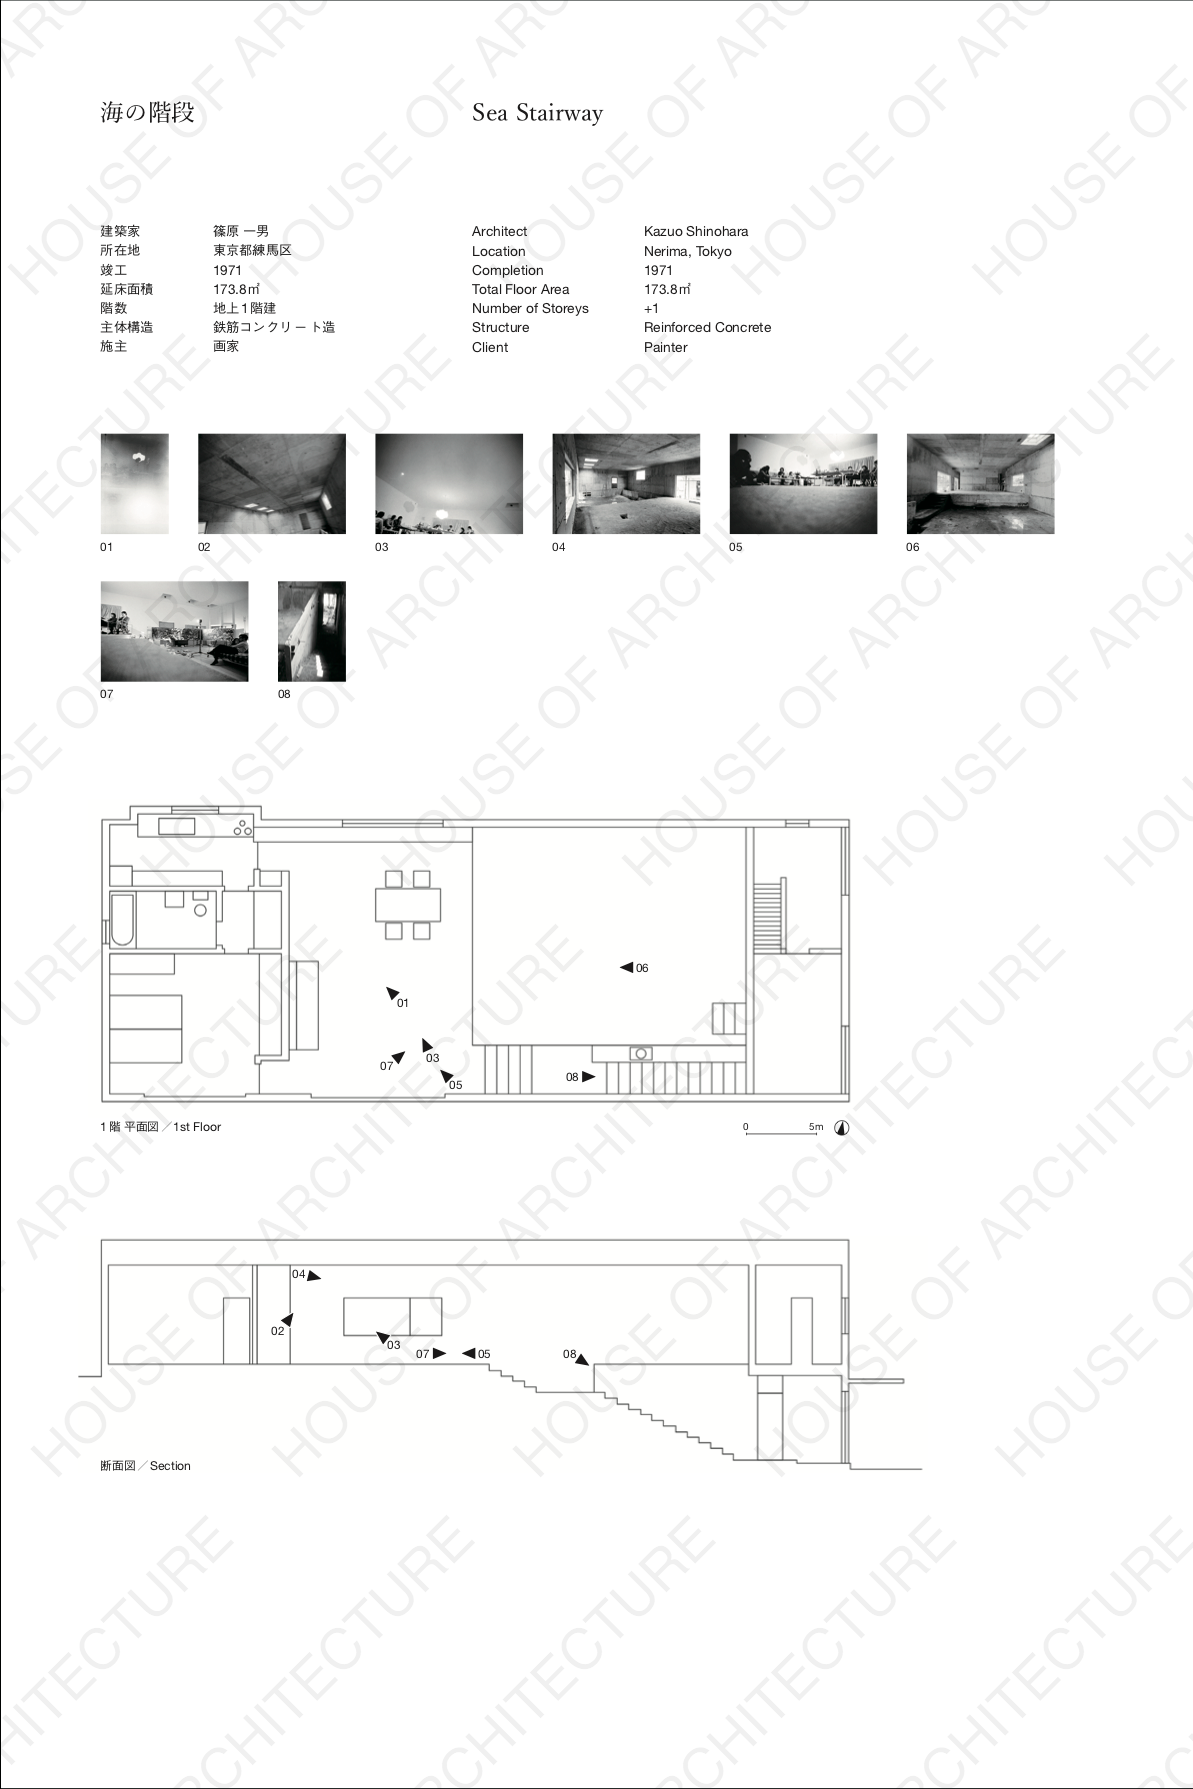 建築の建築 House Of Architecture 建築のことばを探す 多木浩二の建築写真 第二刷発売中